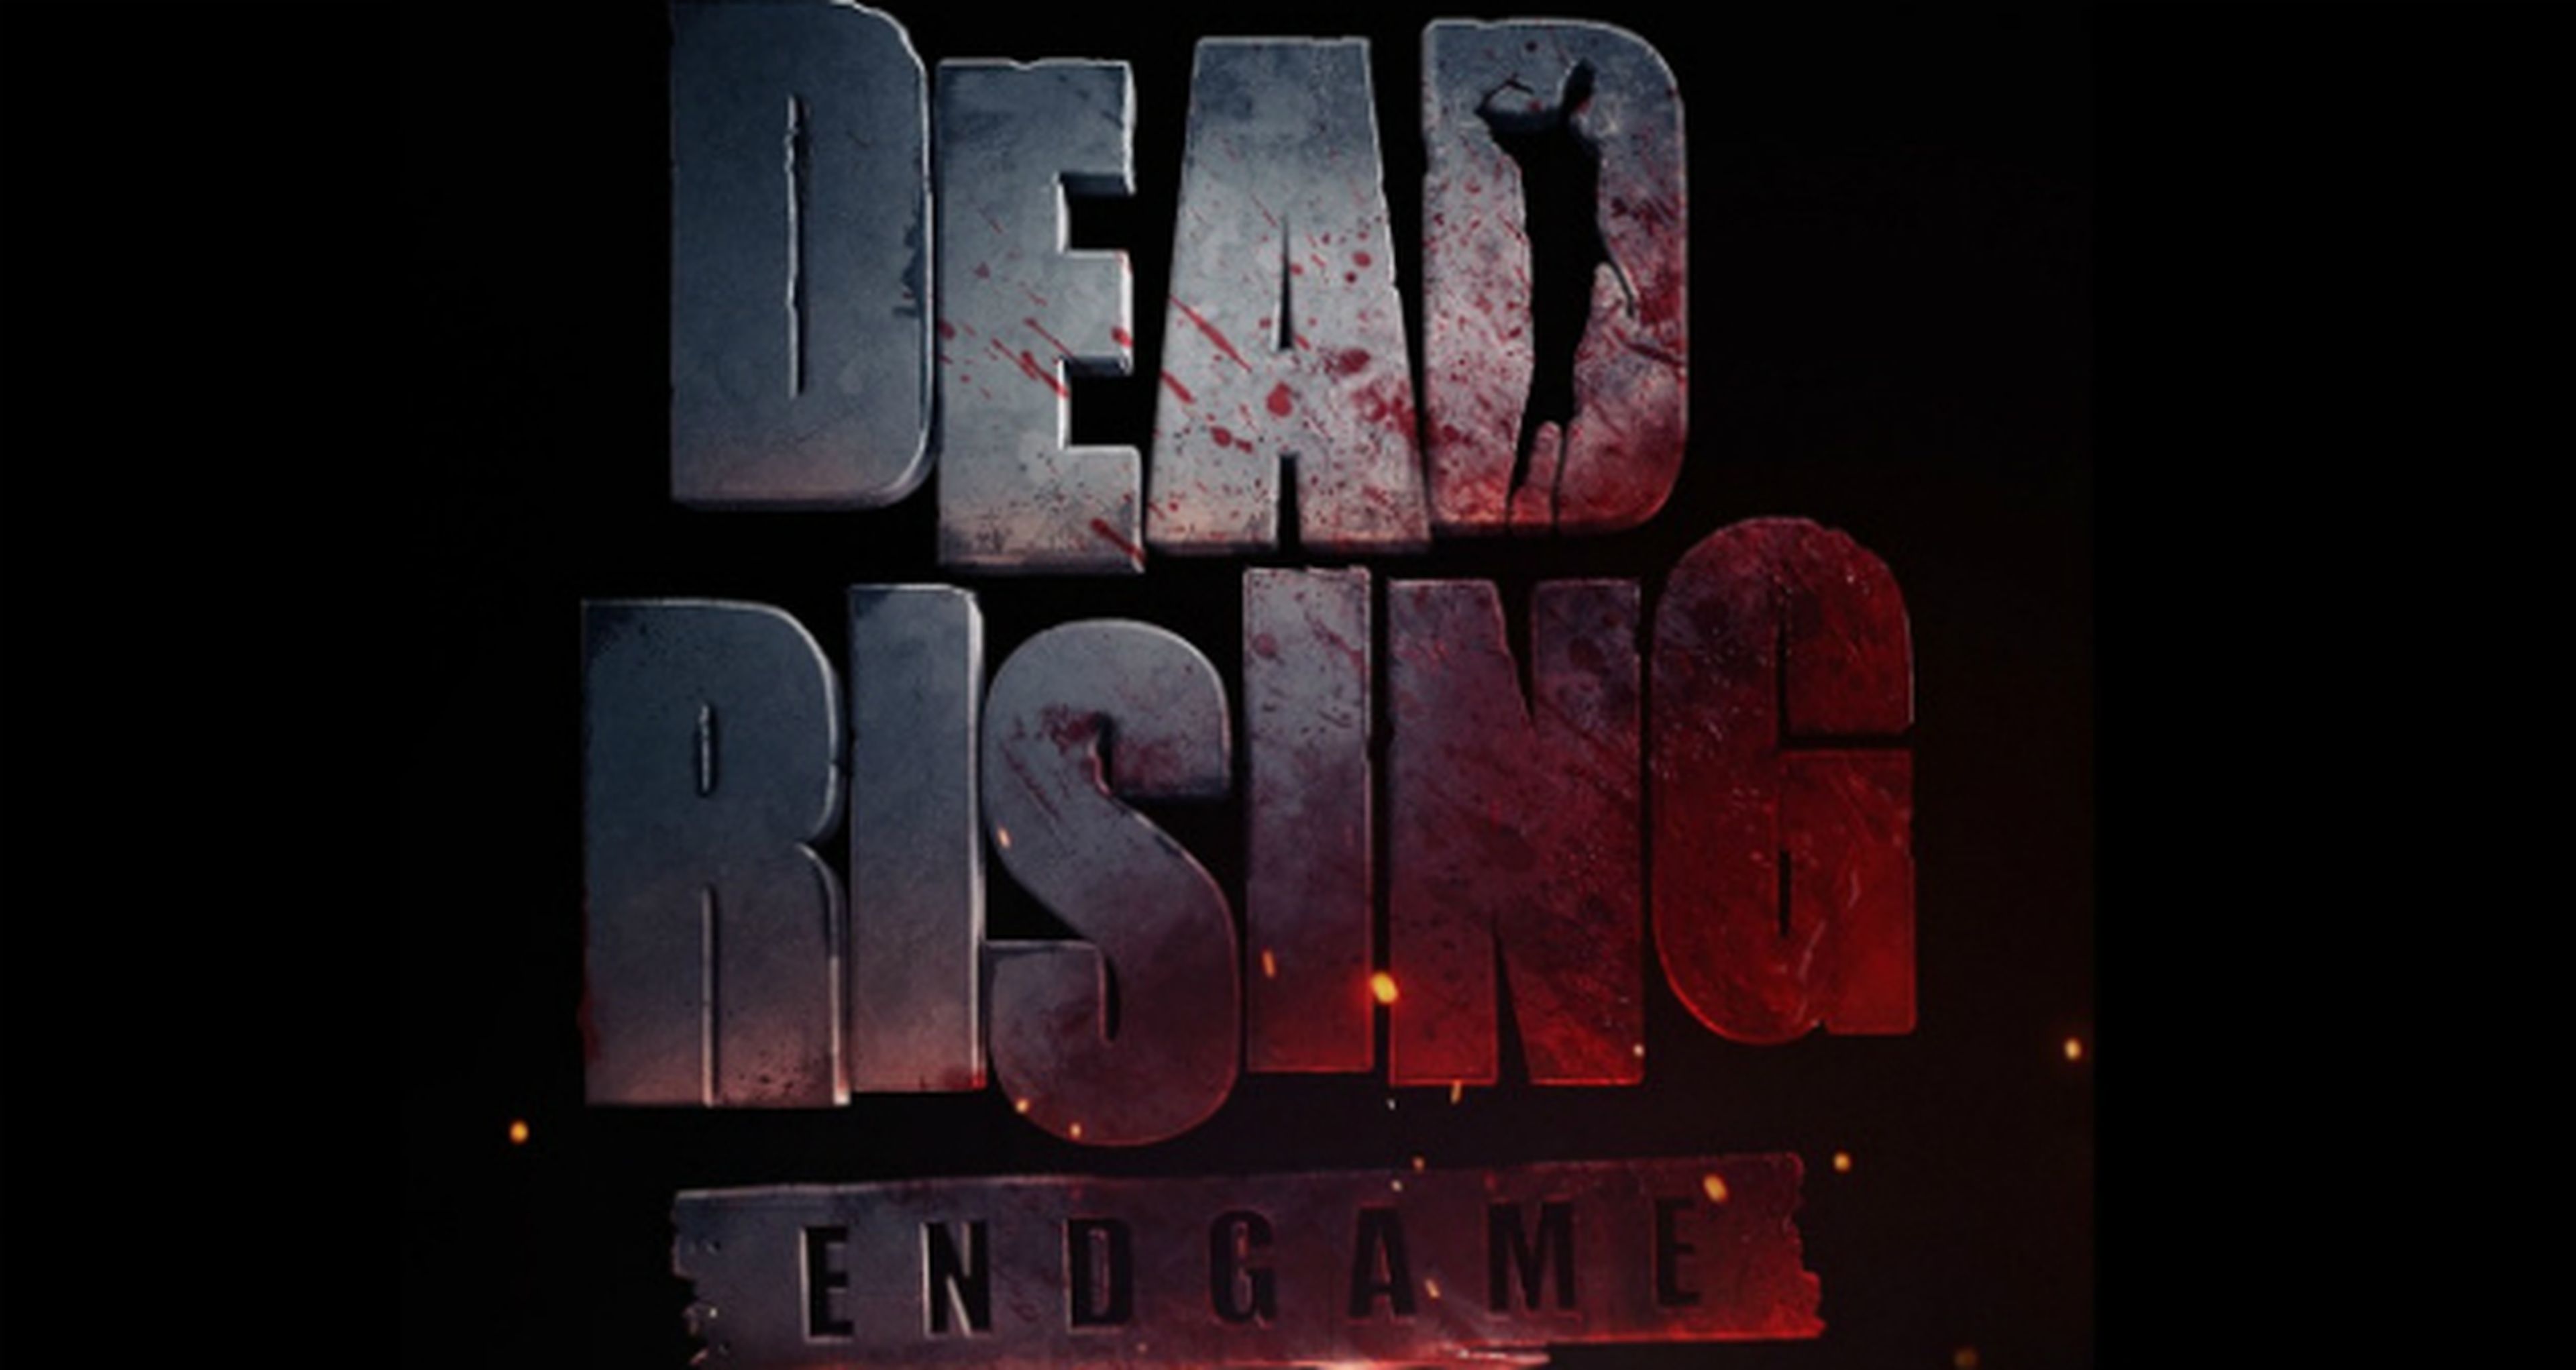 Dead Rising Endgame comienza su rodaje